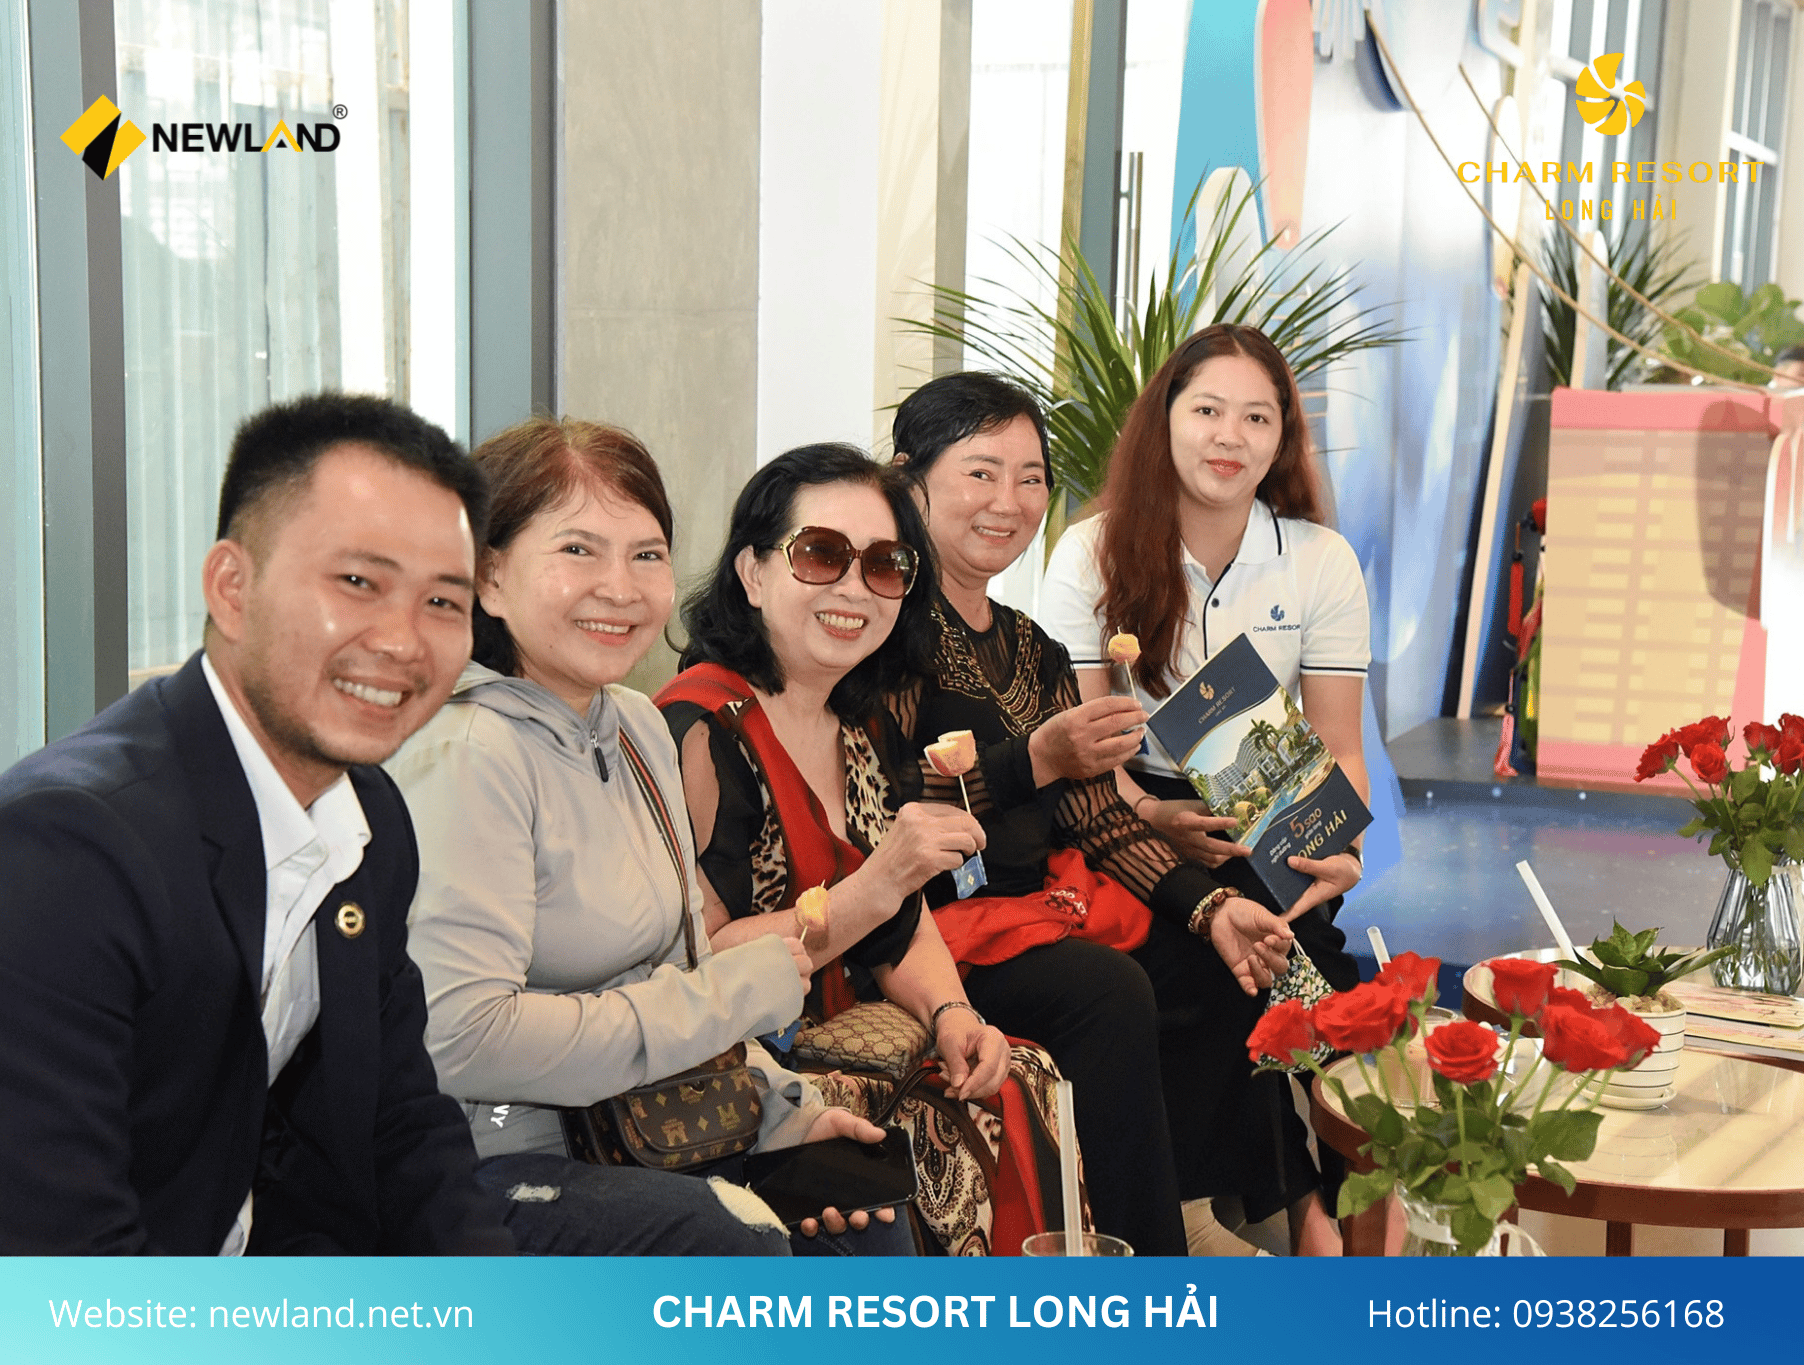 Khu phức hợp Căn hộ Charm Resort Long Hải được đầu tư bài bản, tích hợp hệ thống tiện ích cao cấp sẽ mang đến những trải nghiệm hoàn toàn khác biệt về cuộc sống phồn vinh, thịnh vượng.